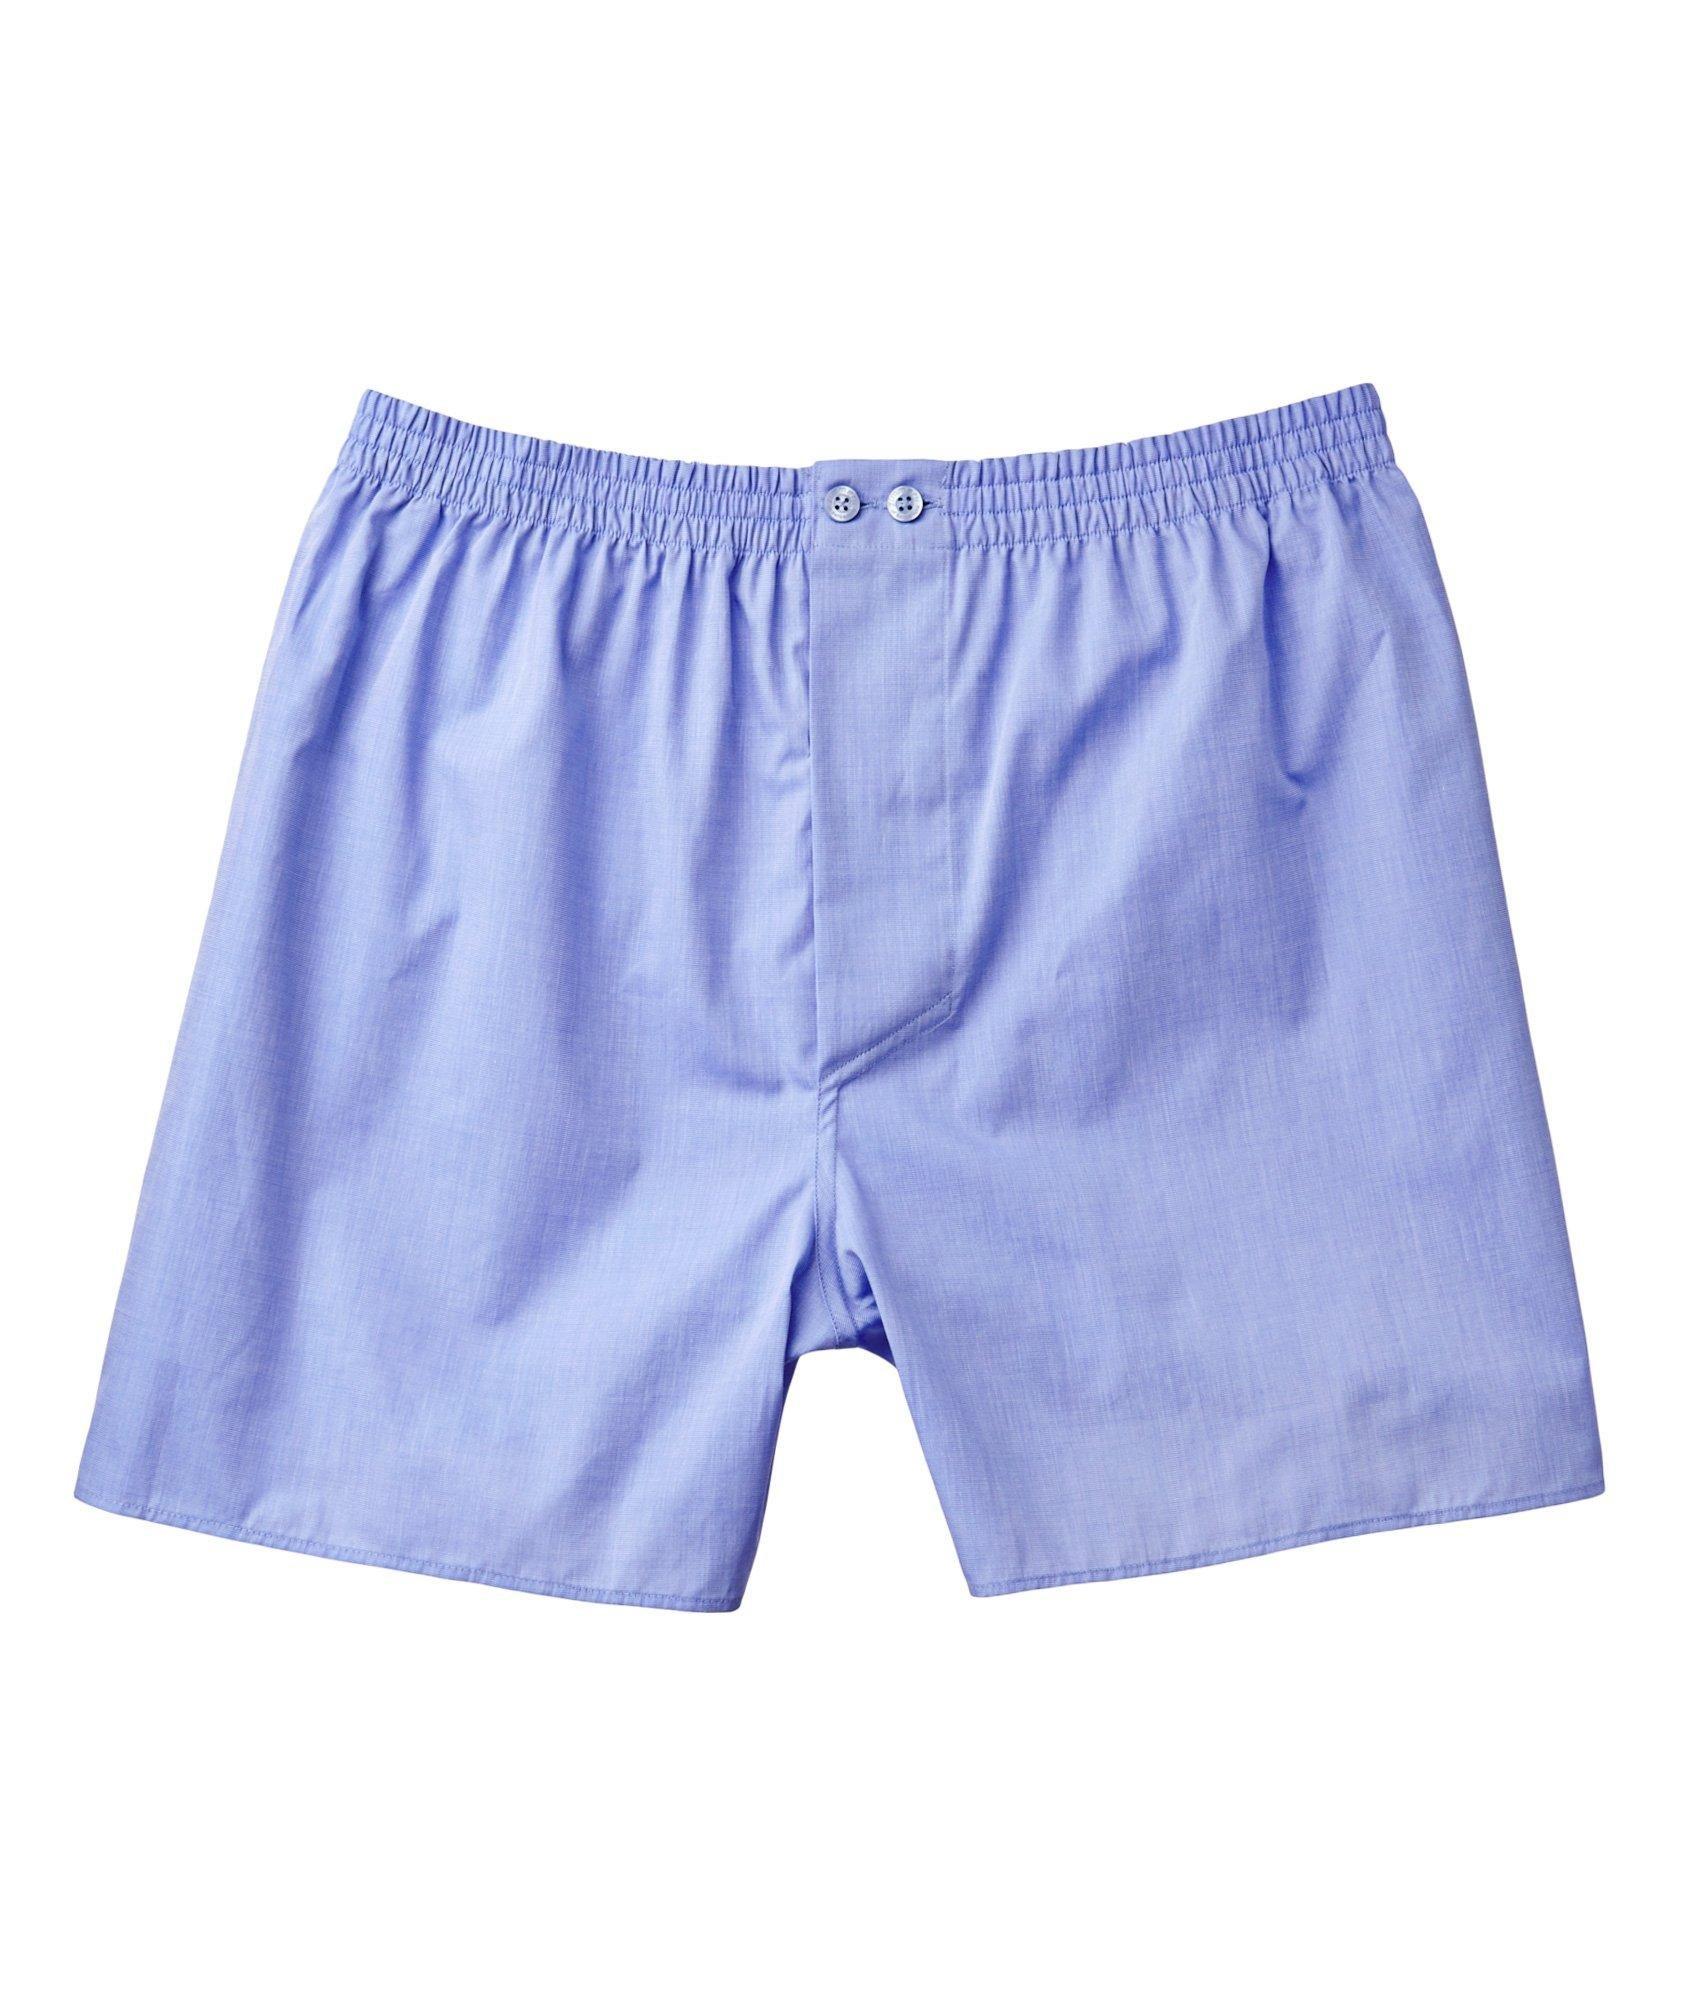 Zimmerli 8008 Woven Cotton Boxer Shorts | Underwear | Harry Rosen